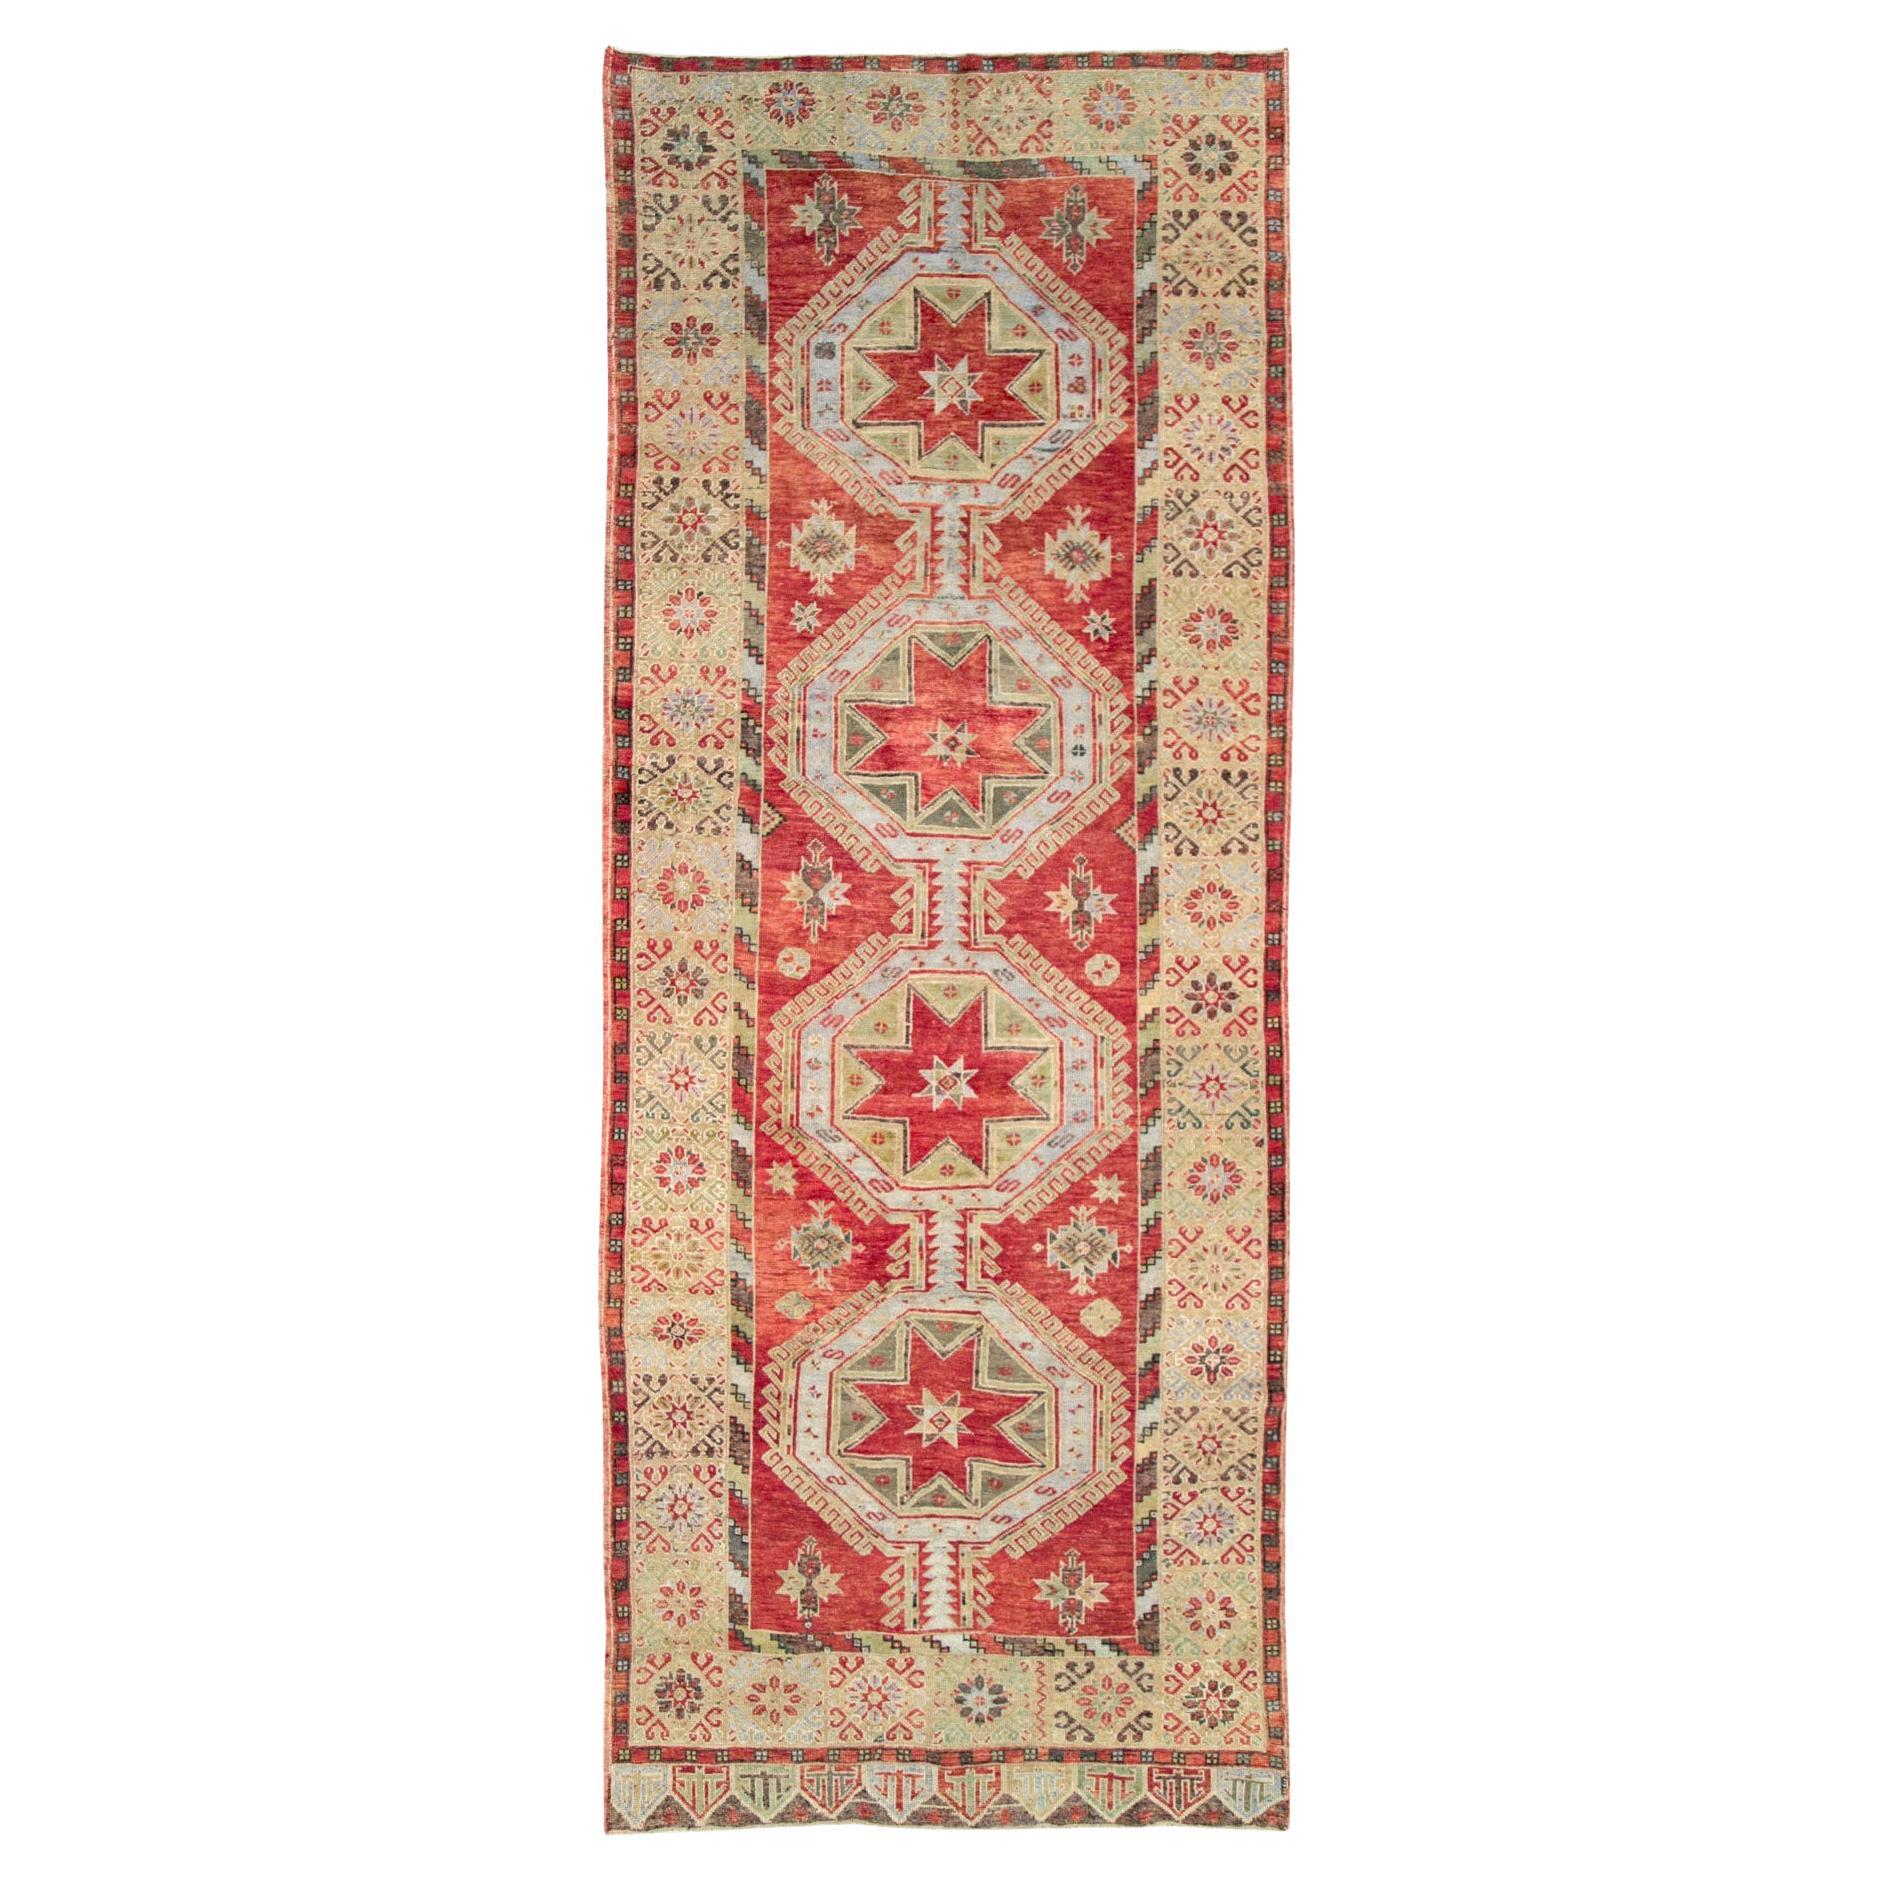 Handgefertigter türkischer anatolischer Galerieteppich aus der Mitte des 20. Jahrhunderts